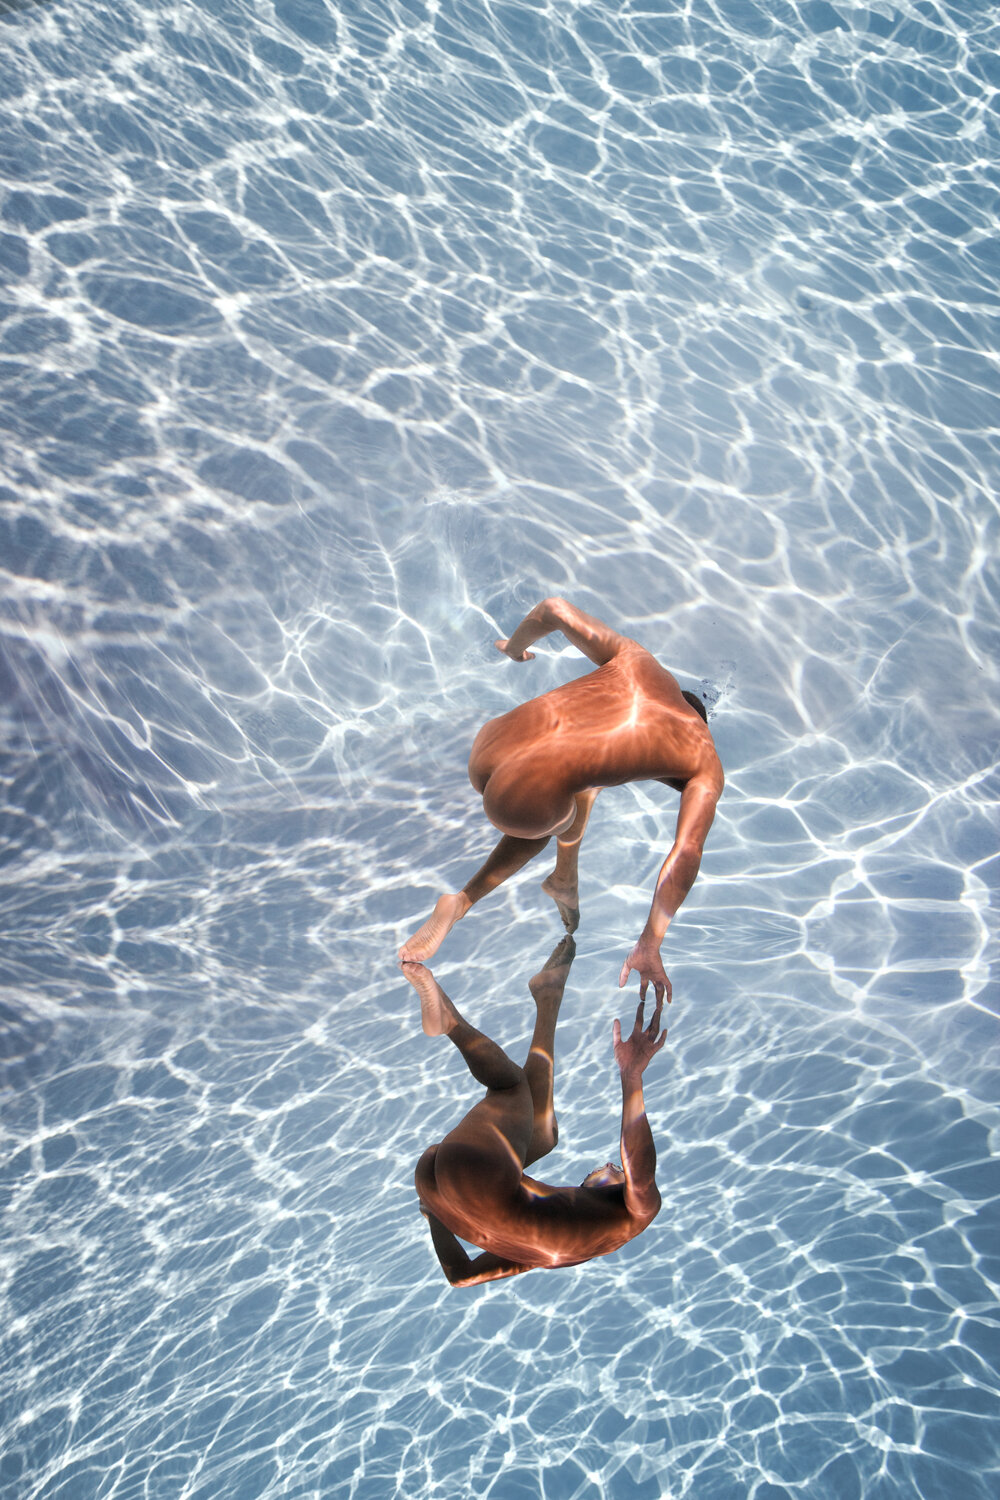 Mesmerizing Series of Floating Bodies in Water - Fubiz Media